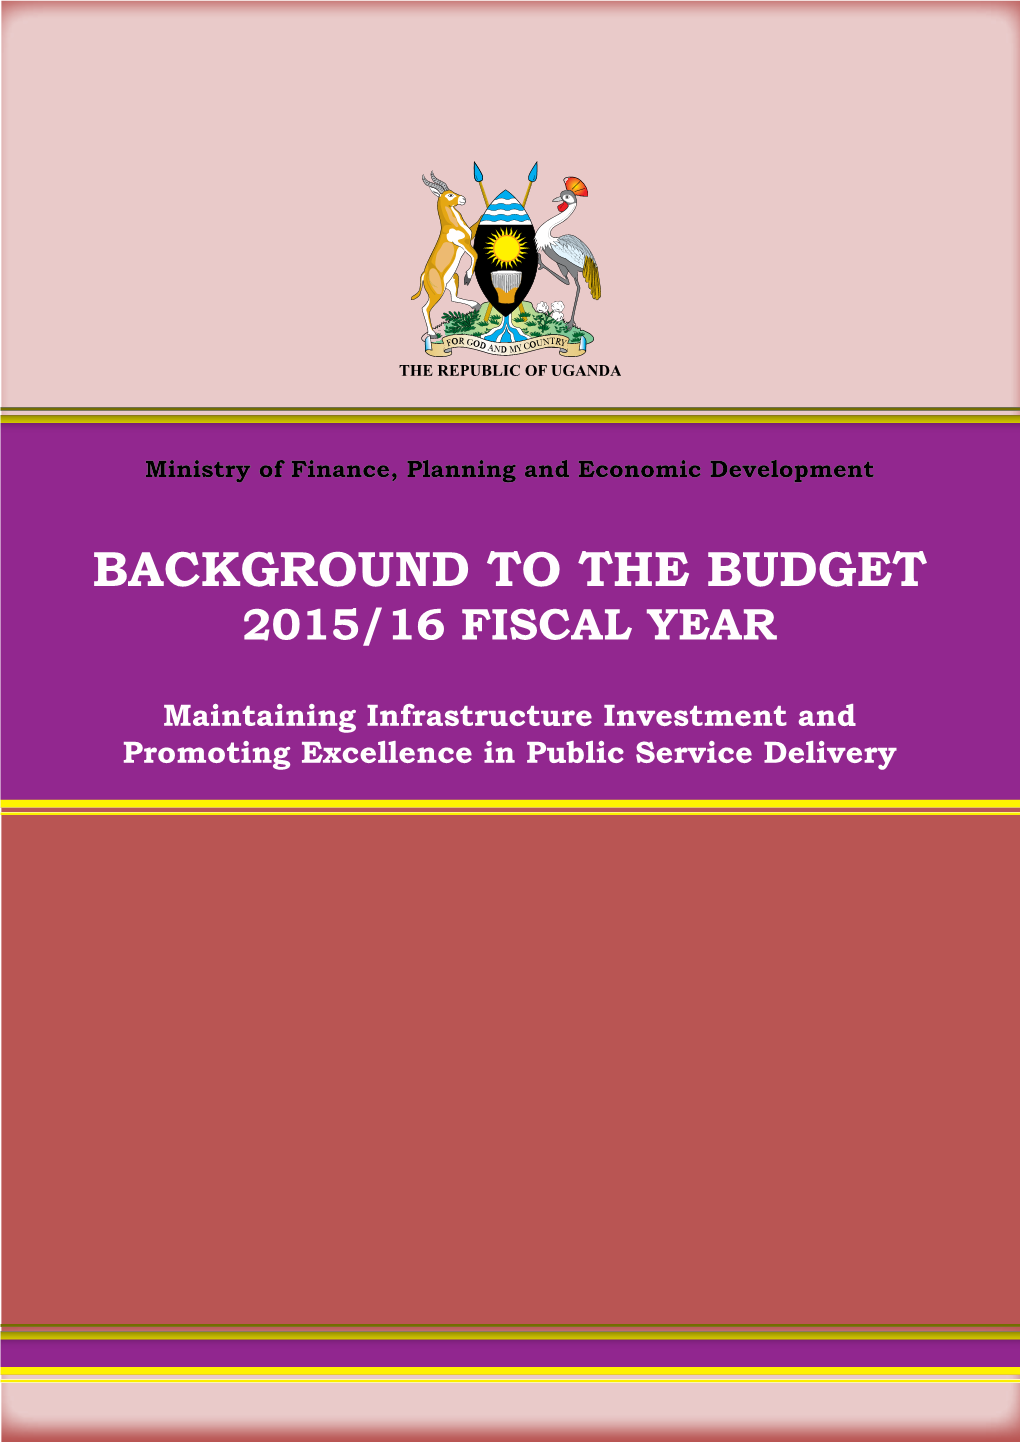 Background to the Budget Background to the Budget